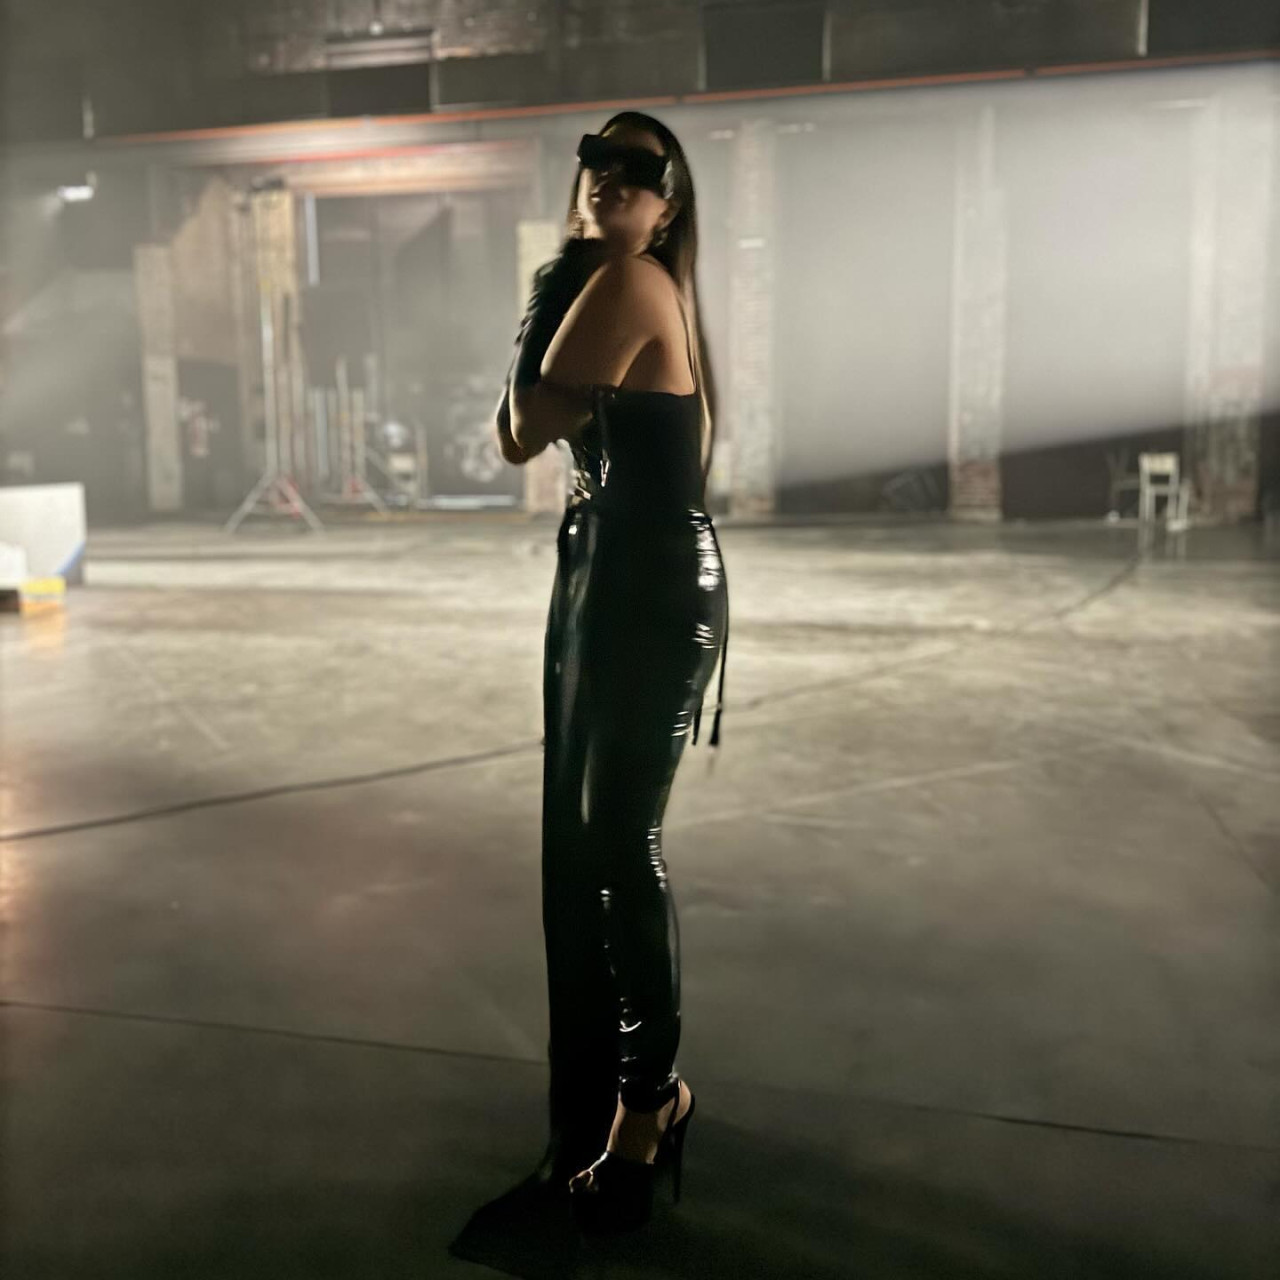 El adelanto del videoclip de Wanda Nara que compartió Icardi. Foto: Instagram.